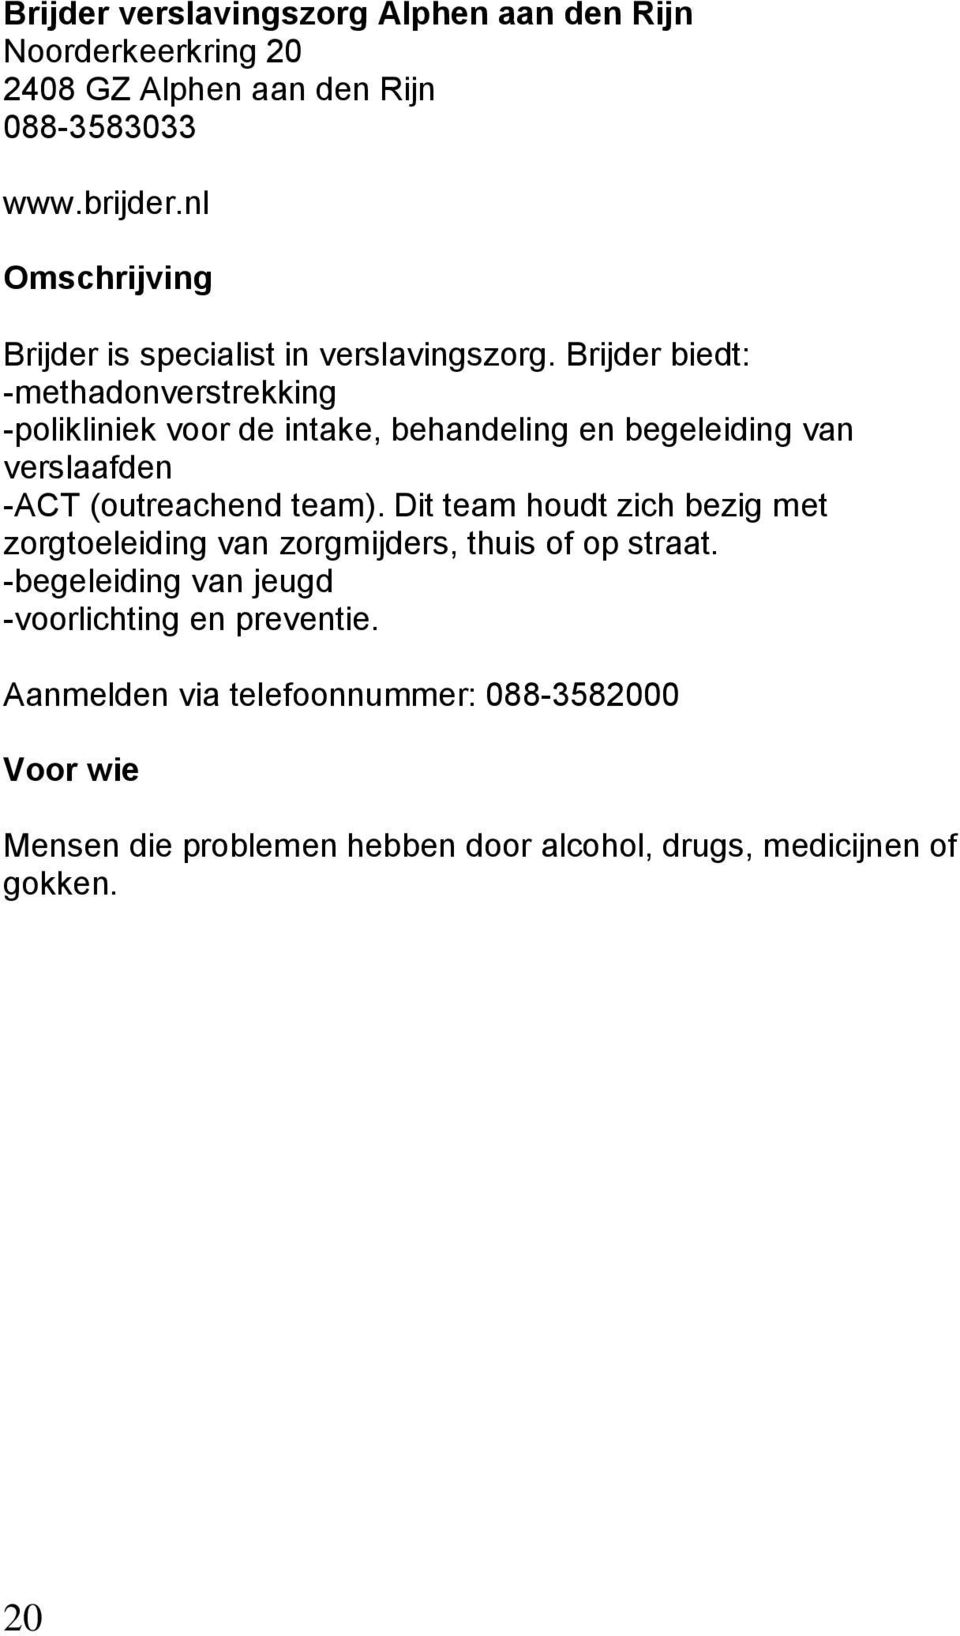 Brijder biedt: -methadonverstrekking -polikliniek voor de intake, behandeling en begeleiding van verslaafden -ACT (outreachend team).